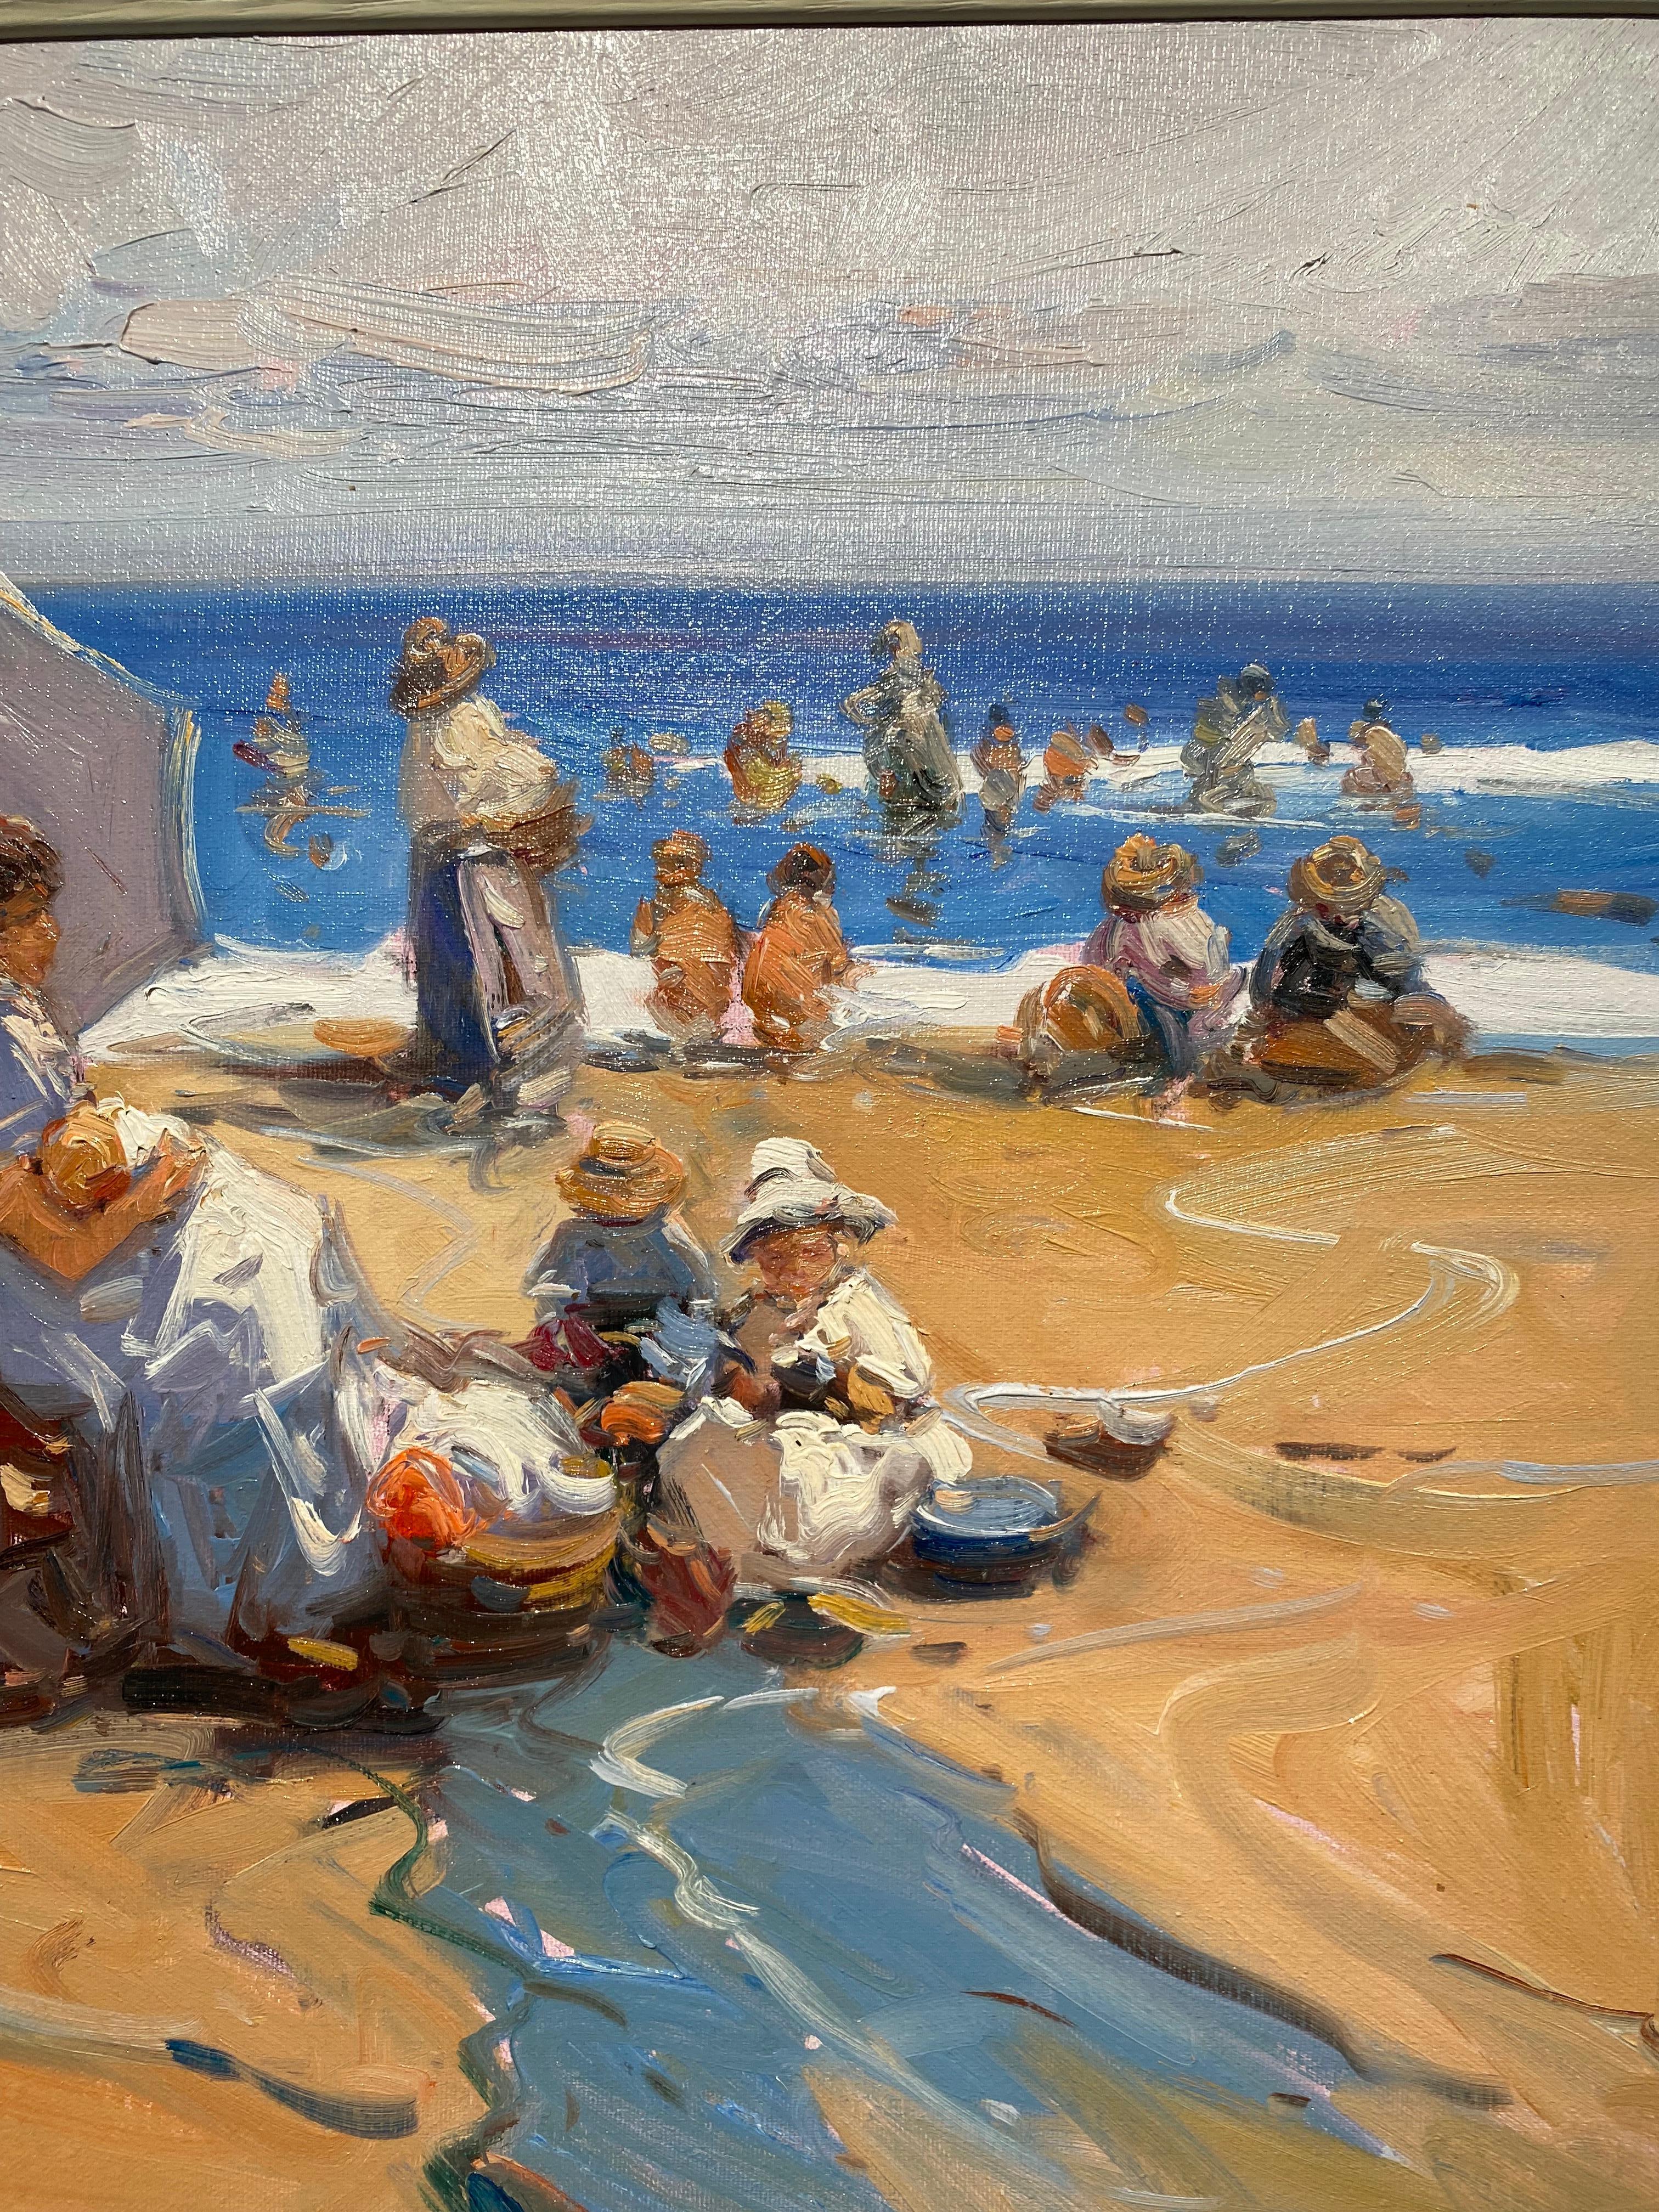 « Créer des souvenirs » - Paysage de plage impressionniste contemporain de personnages, mer - Marron Figurative Painting par Gabriel Casarrubios